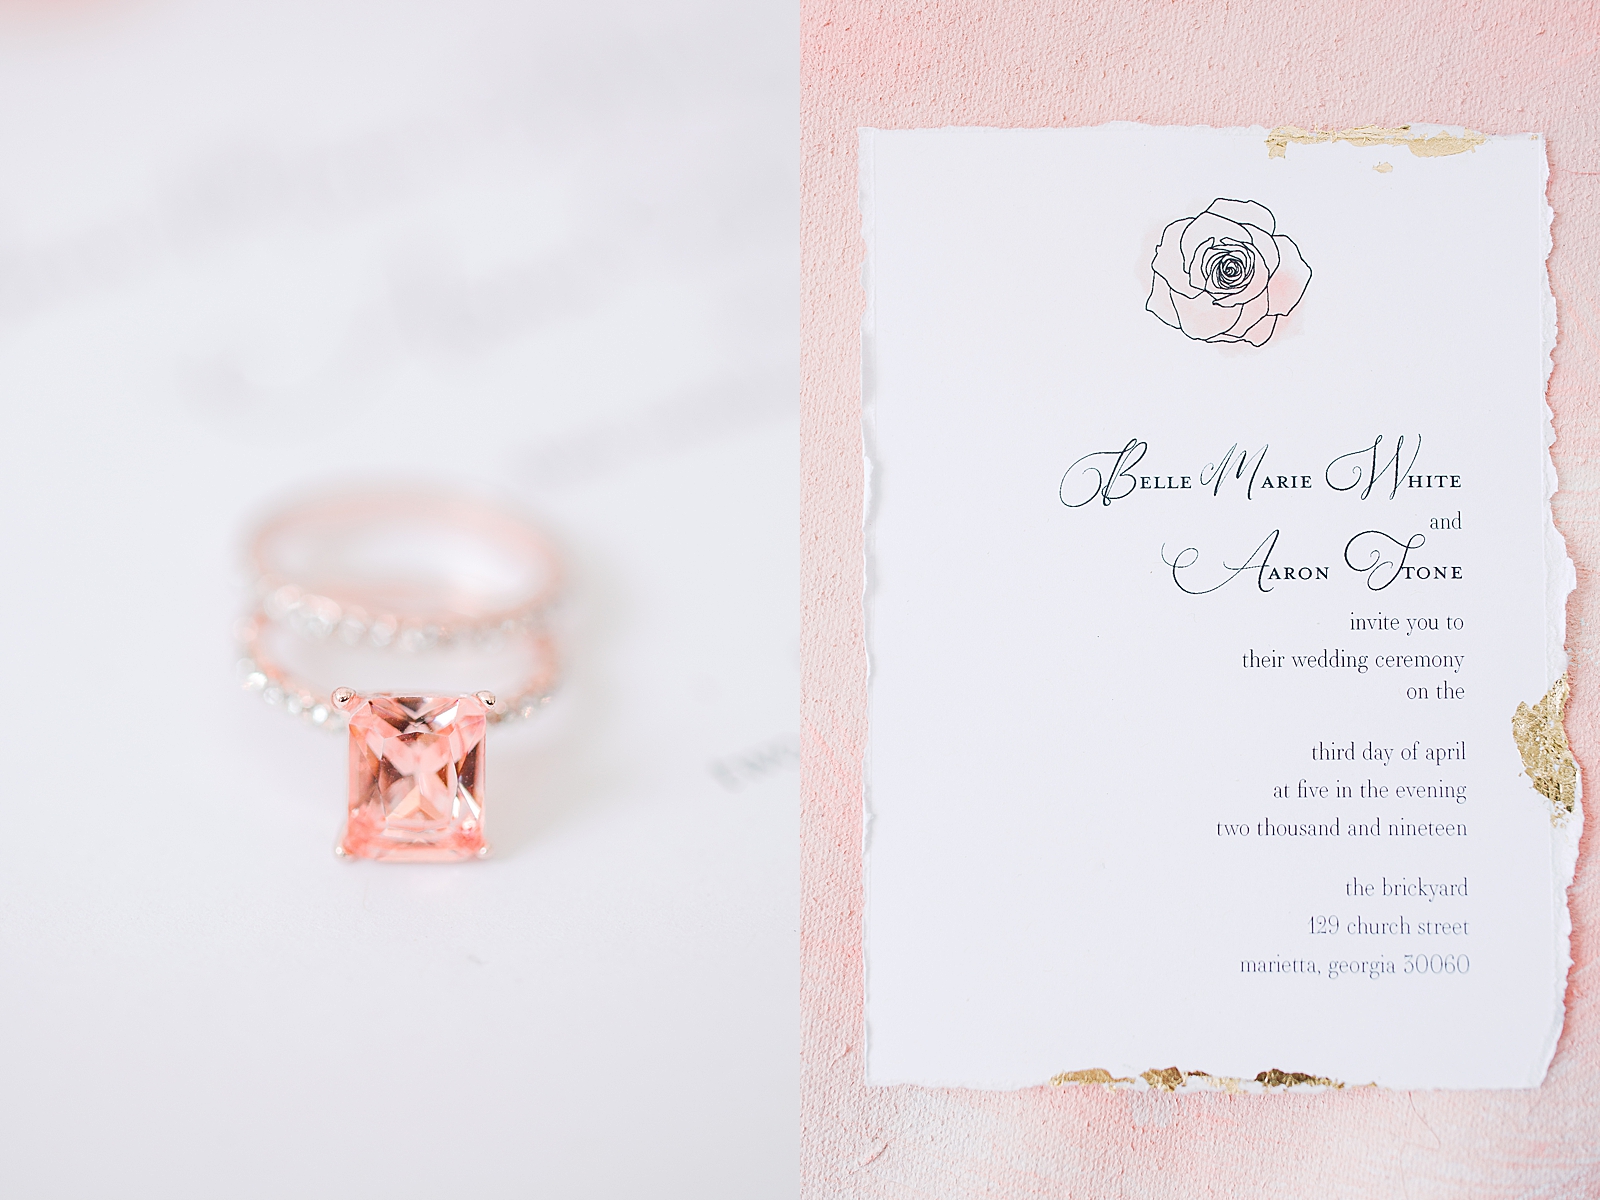 Spring Brickyard Wedding Pink Diamond Ring and Invitation Photos